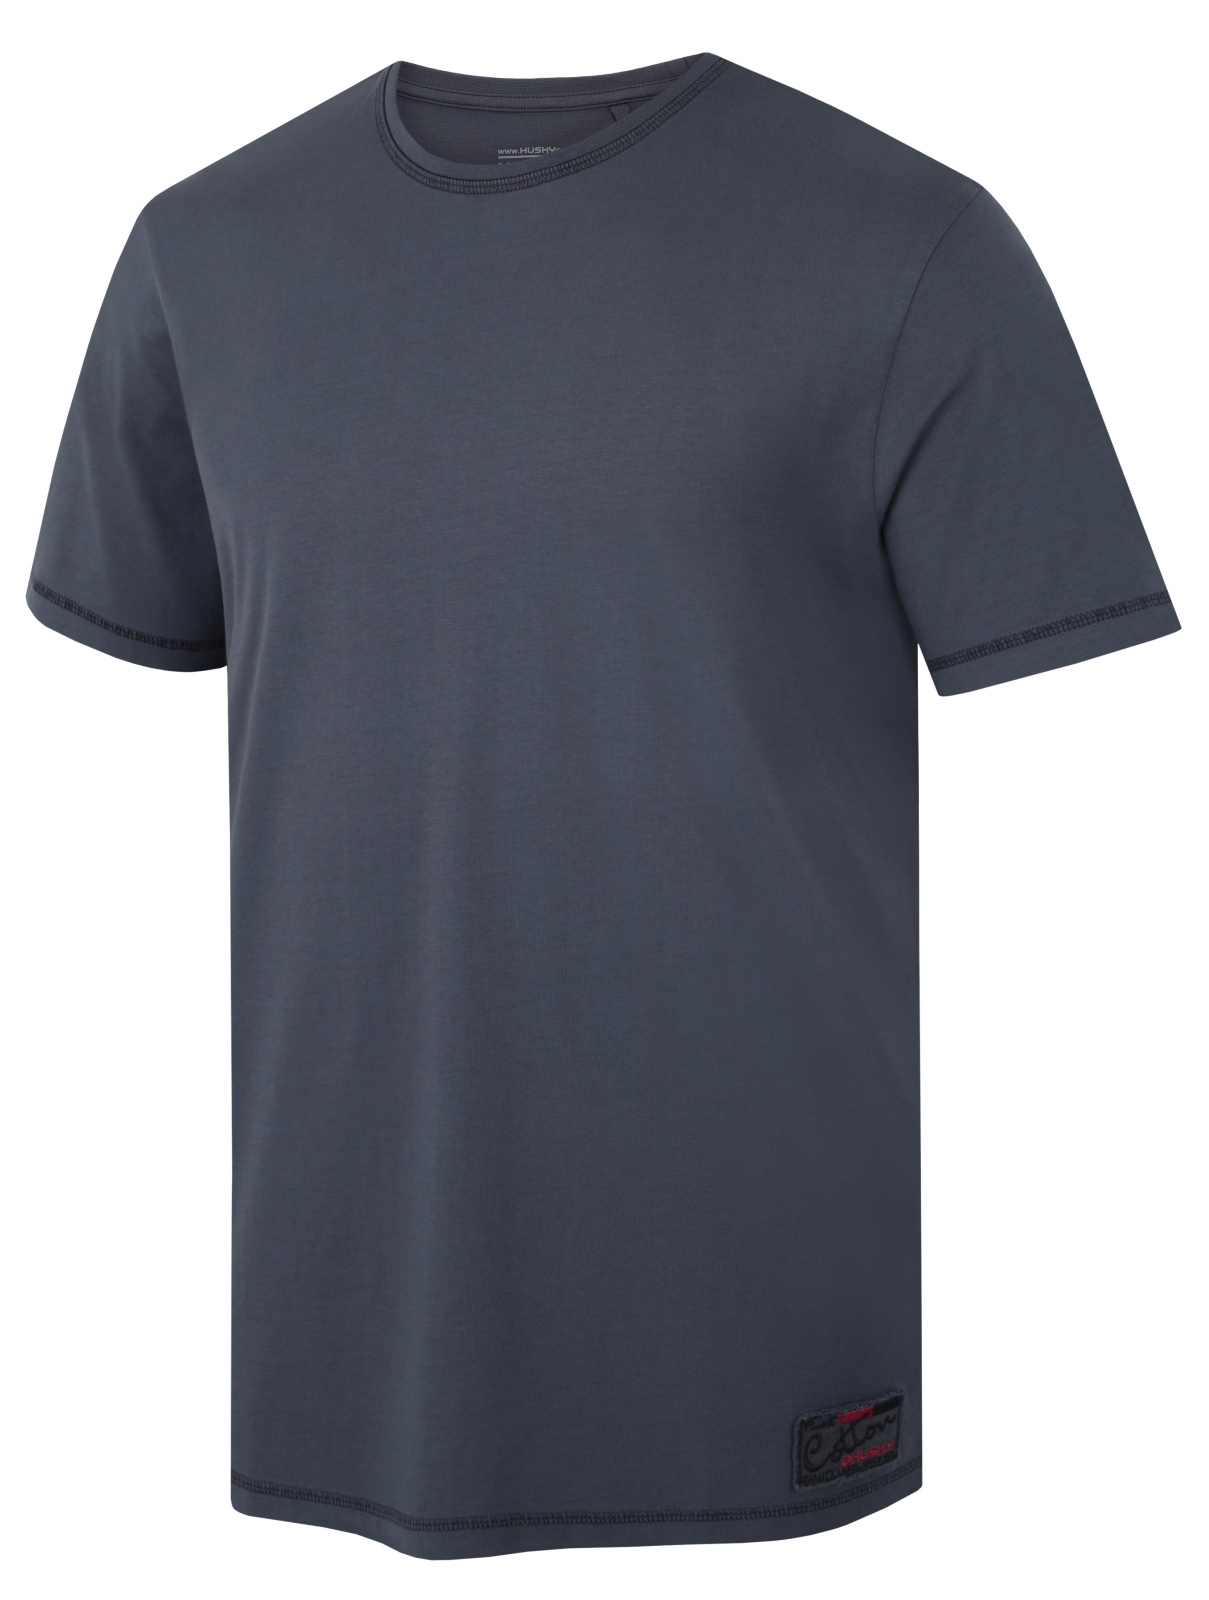 Husky Pánské bavlněné triko Tee Base M dark grey Velikost: XL pánské tričko s krátkým rukávem